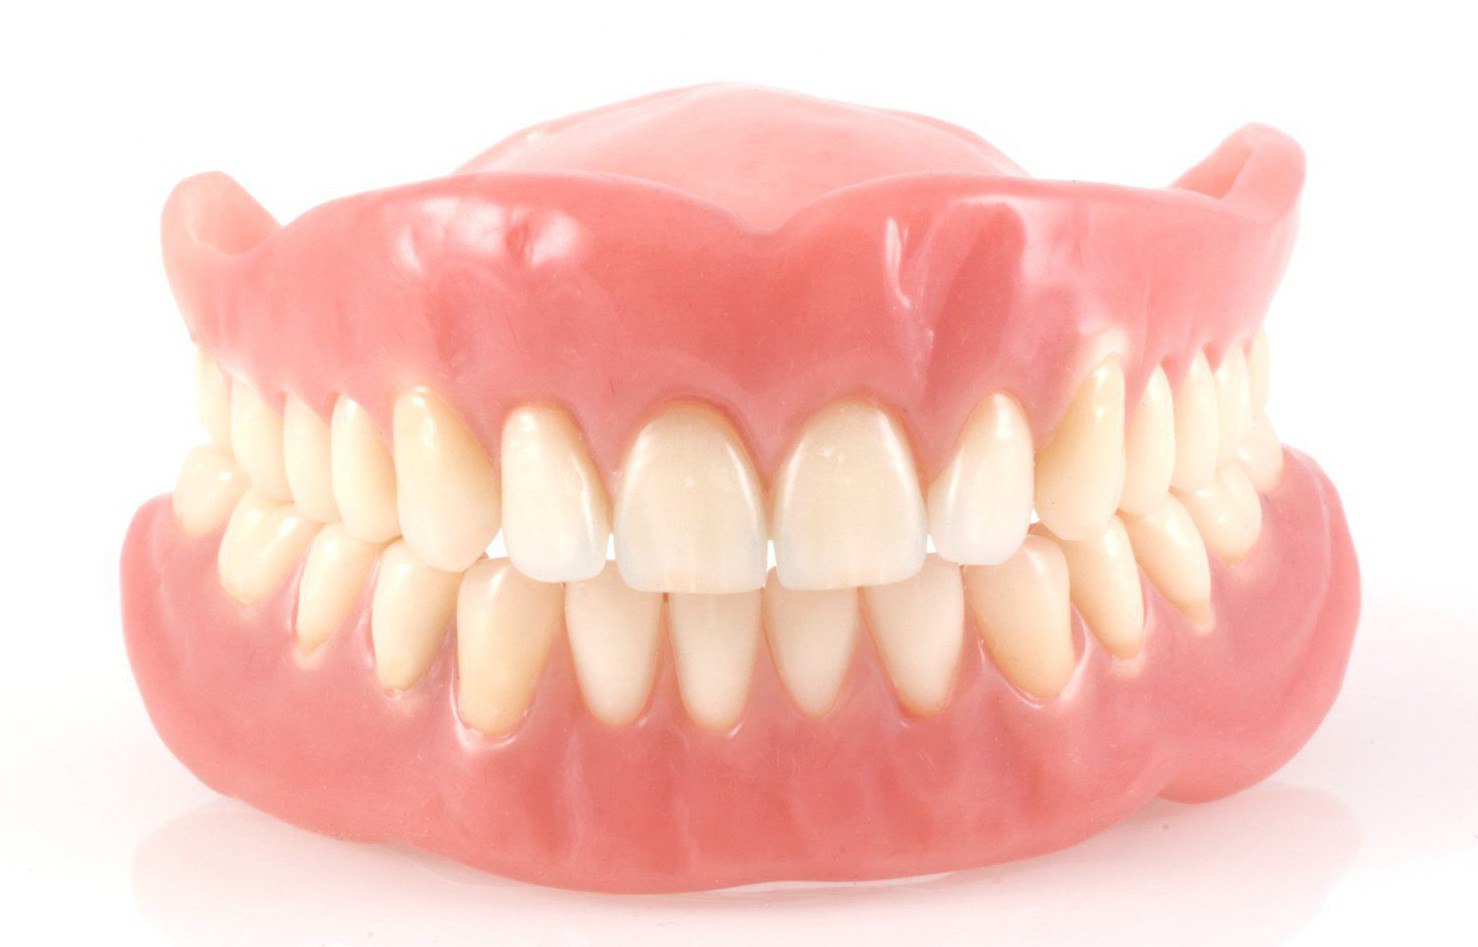 Виды зубного протезирования